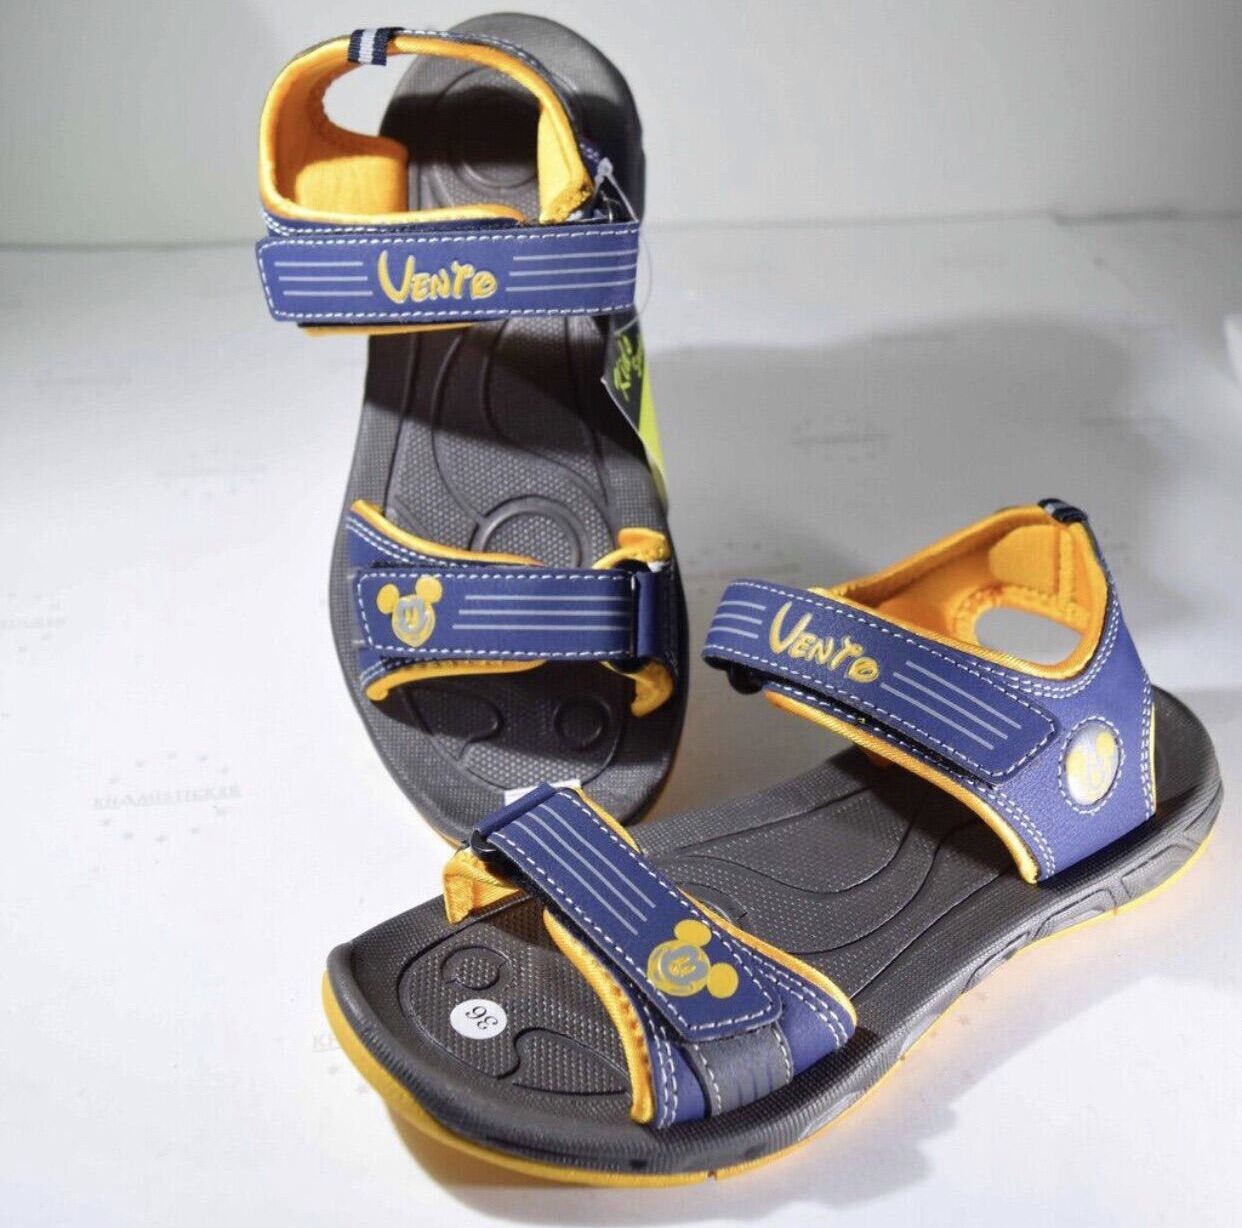 [FREESHIP] Giày Sandal Quai Ngang Chính Hãng Vento Trẻ Em Màu Vàng